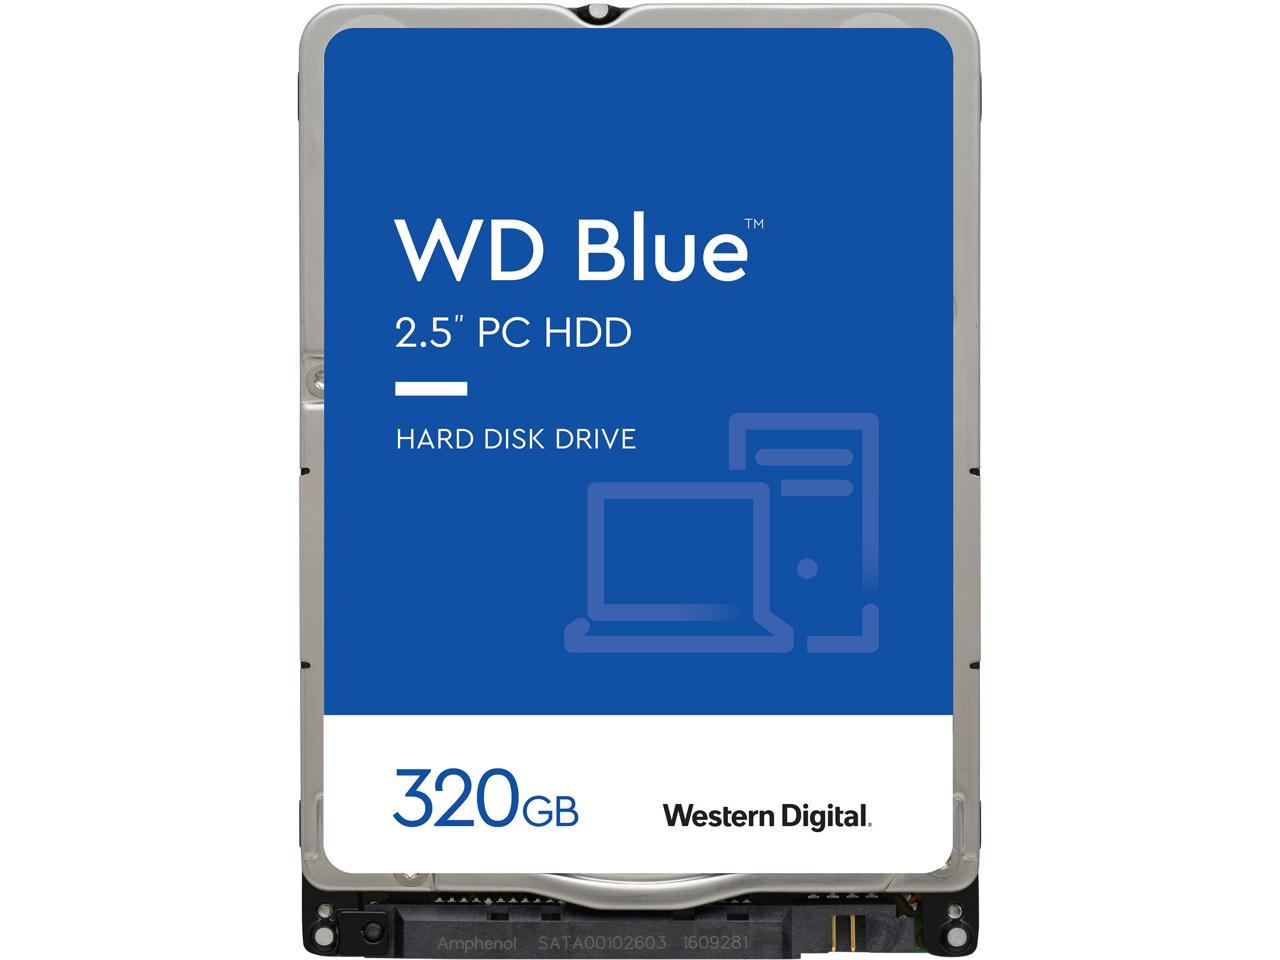 Wd Blue 320Gb Internal Hard Disk Drive - 5400 Rpm Class Sata 6Gb/S 16Mb Cache 2.5 Inch - Wd3200Lpcx